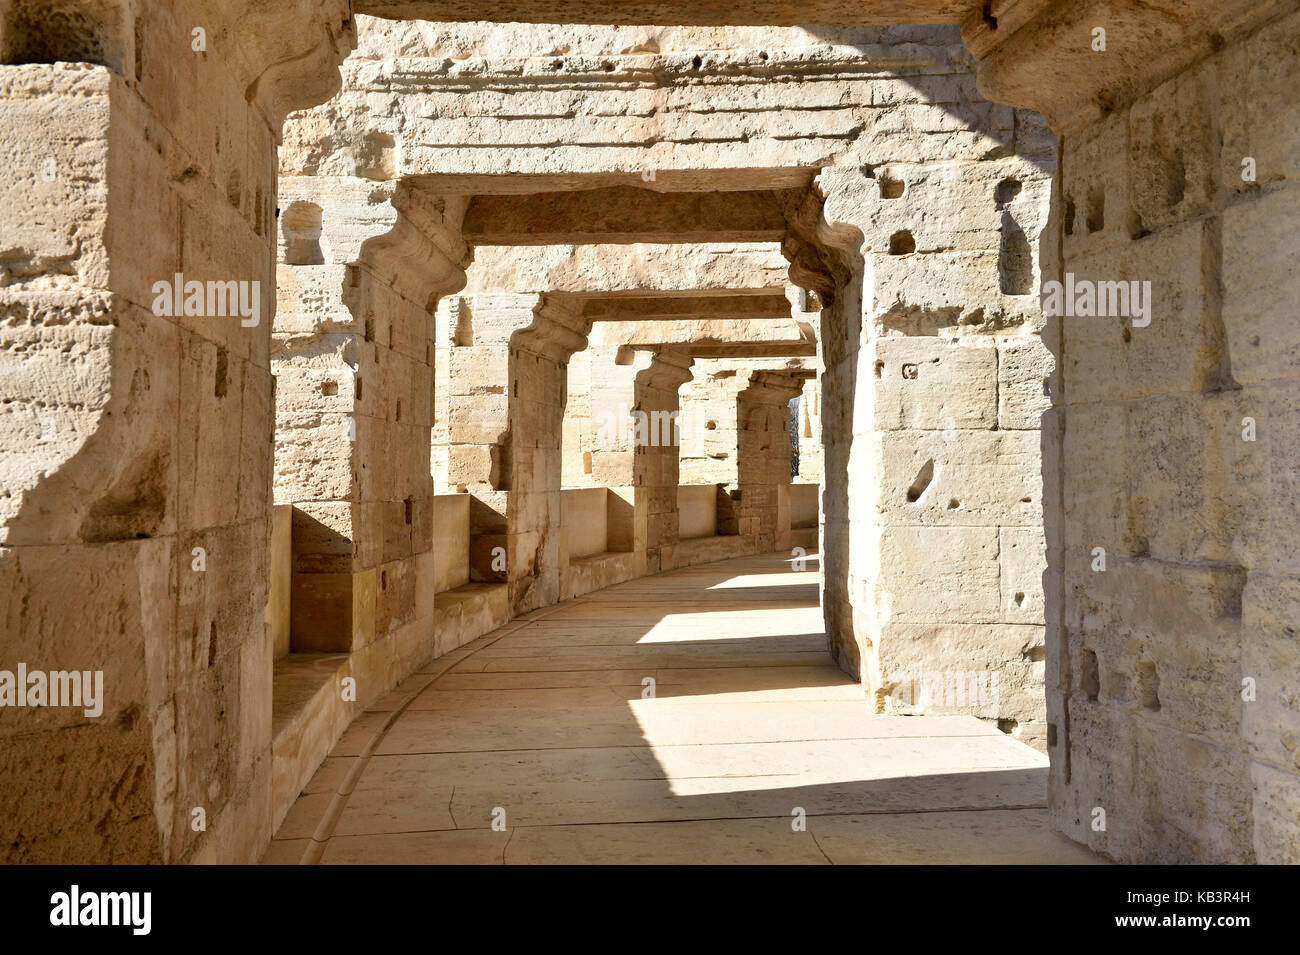 Frankreich, Bouches-du-Rhone, Arles, die Arenen, das Römische Amphitheater von 80-90 AD, als Weltkulturerbe von der UNESCO Stockfoto